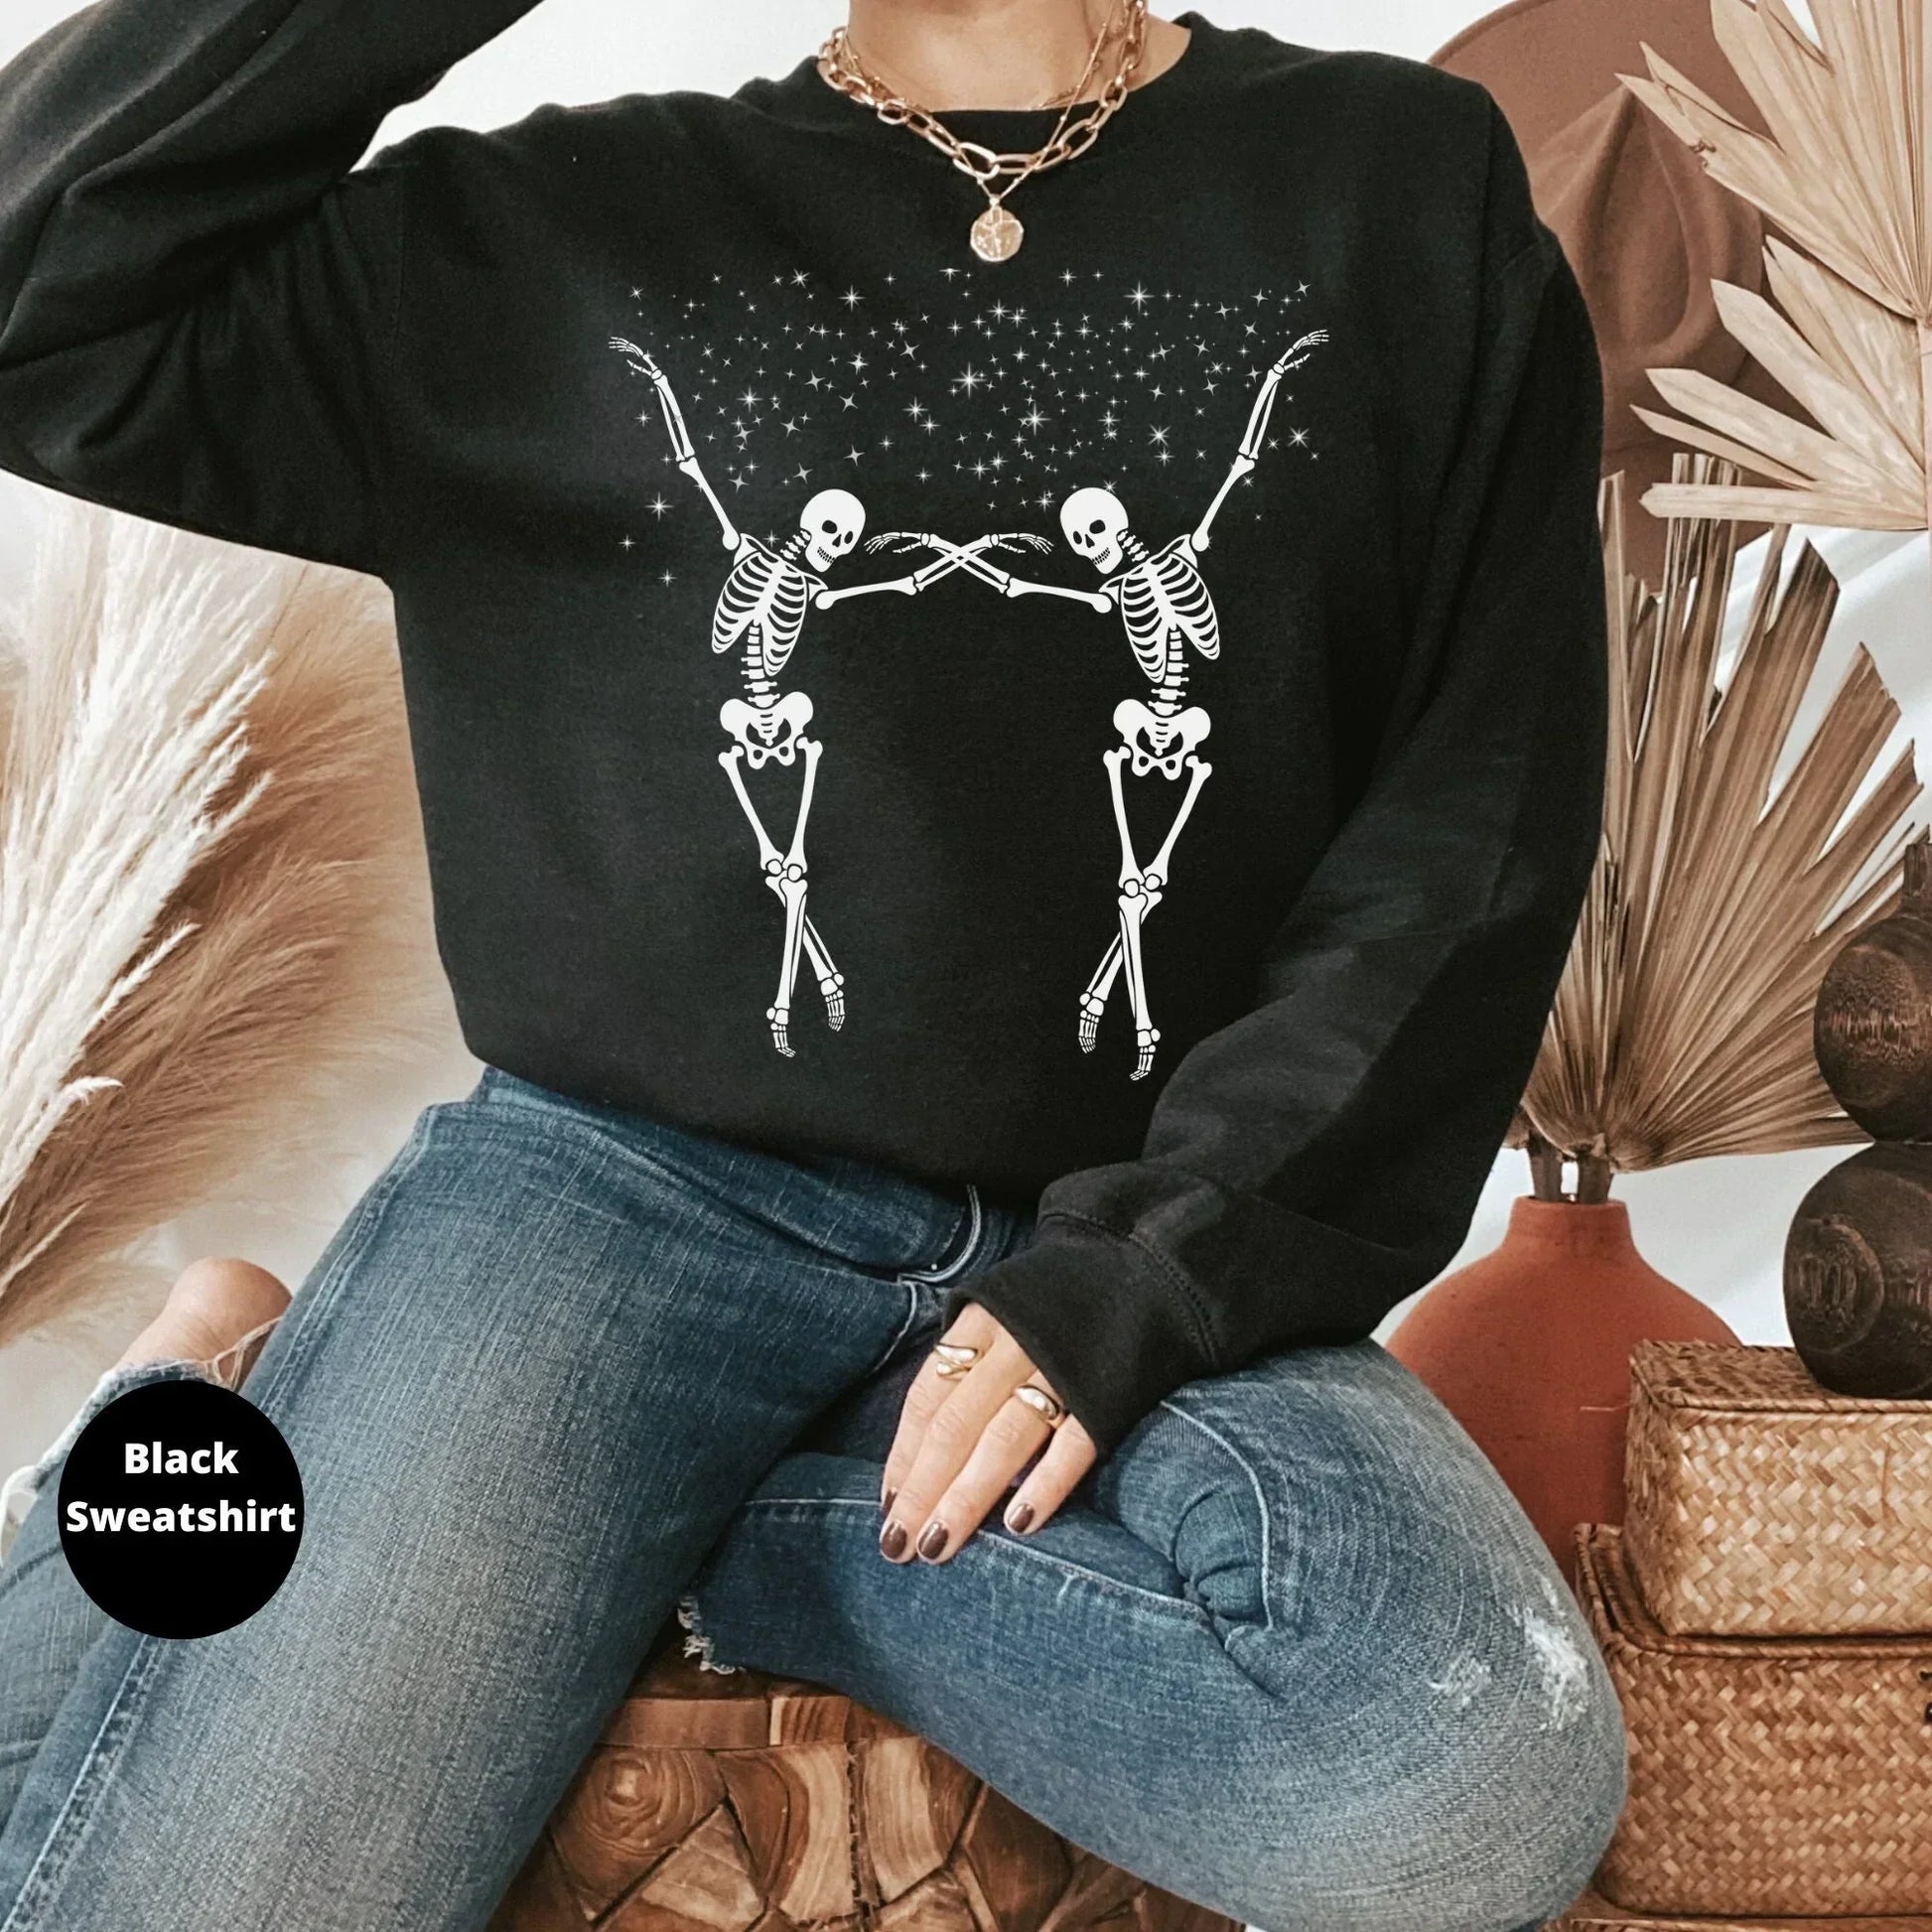 Halloween Sweatshirt, Spooky Season Tshirt, Dancing Skeletons, Fall Sweater, Skeleton Shirt, Women's Hoodie, Gift for Her, Fun Party Tee HMDesignStudioUS